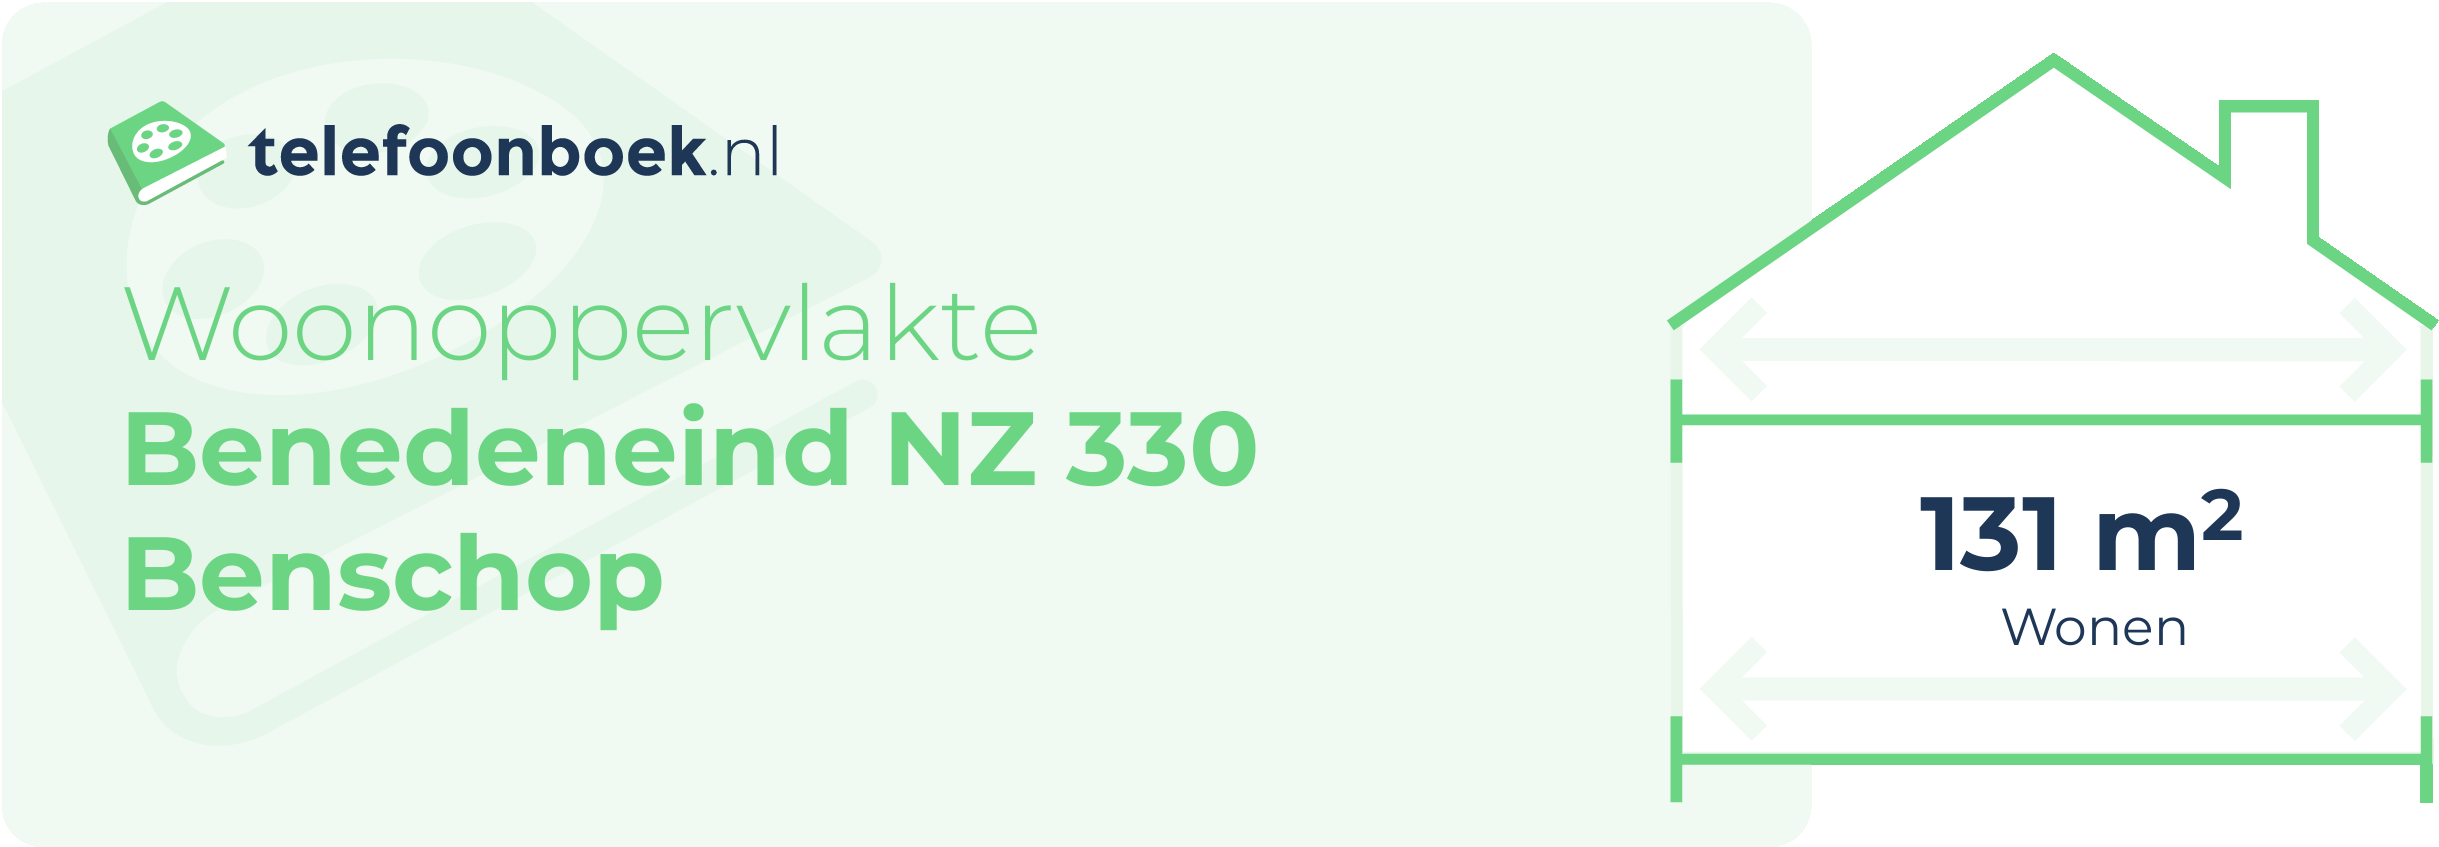 Woonoppervlakte Benedeneind NZ 330 Benschop